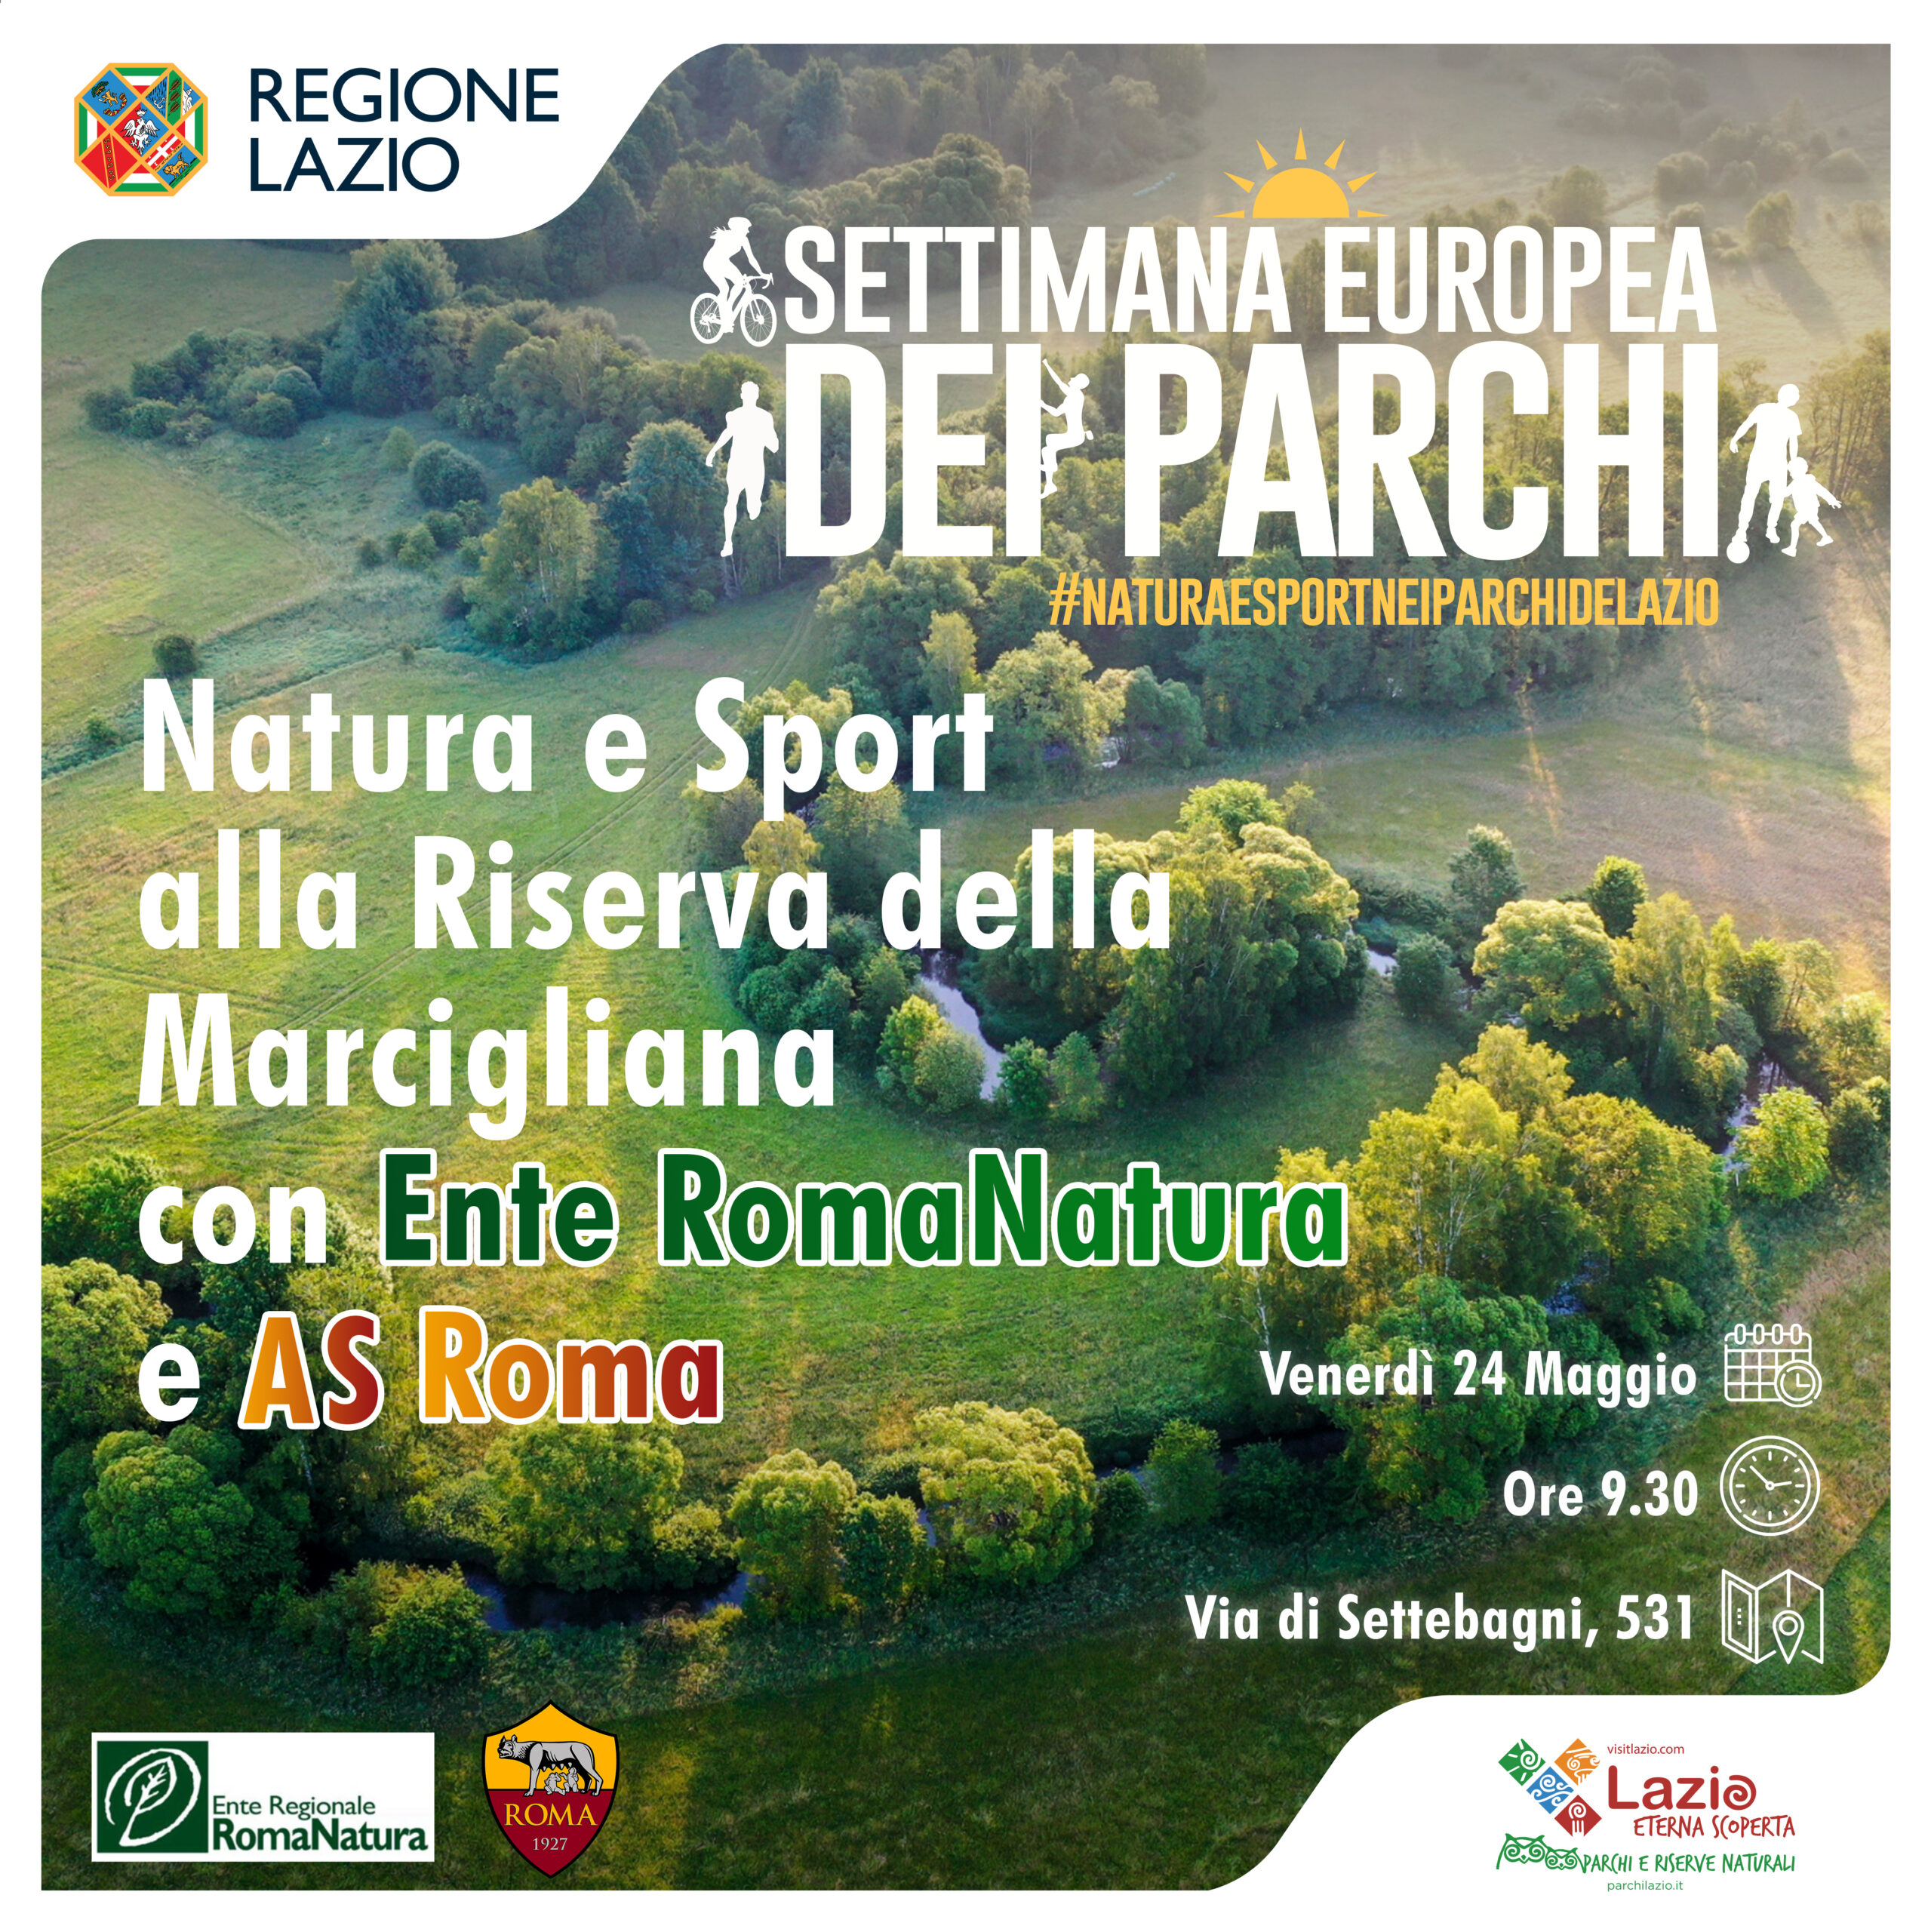 Natura e Sport alla Riserva della Marcigliana con RomaNatura e AS Roma